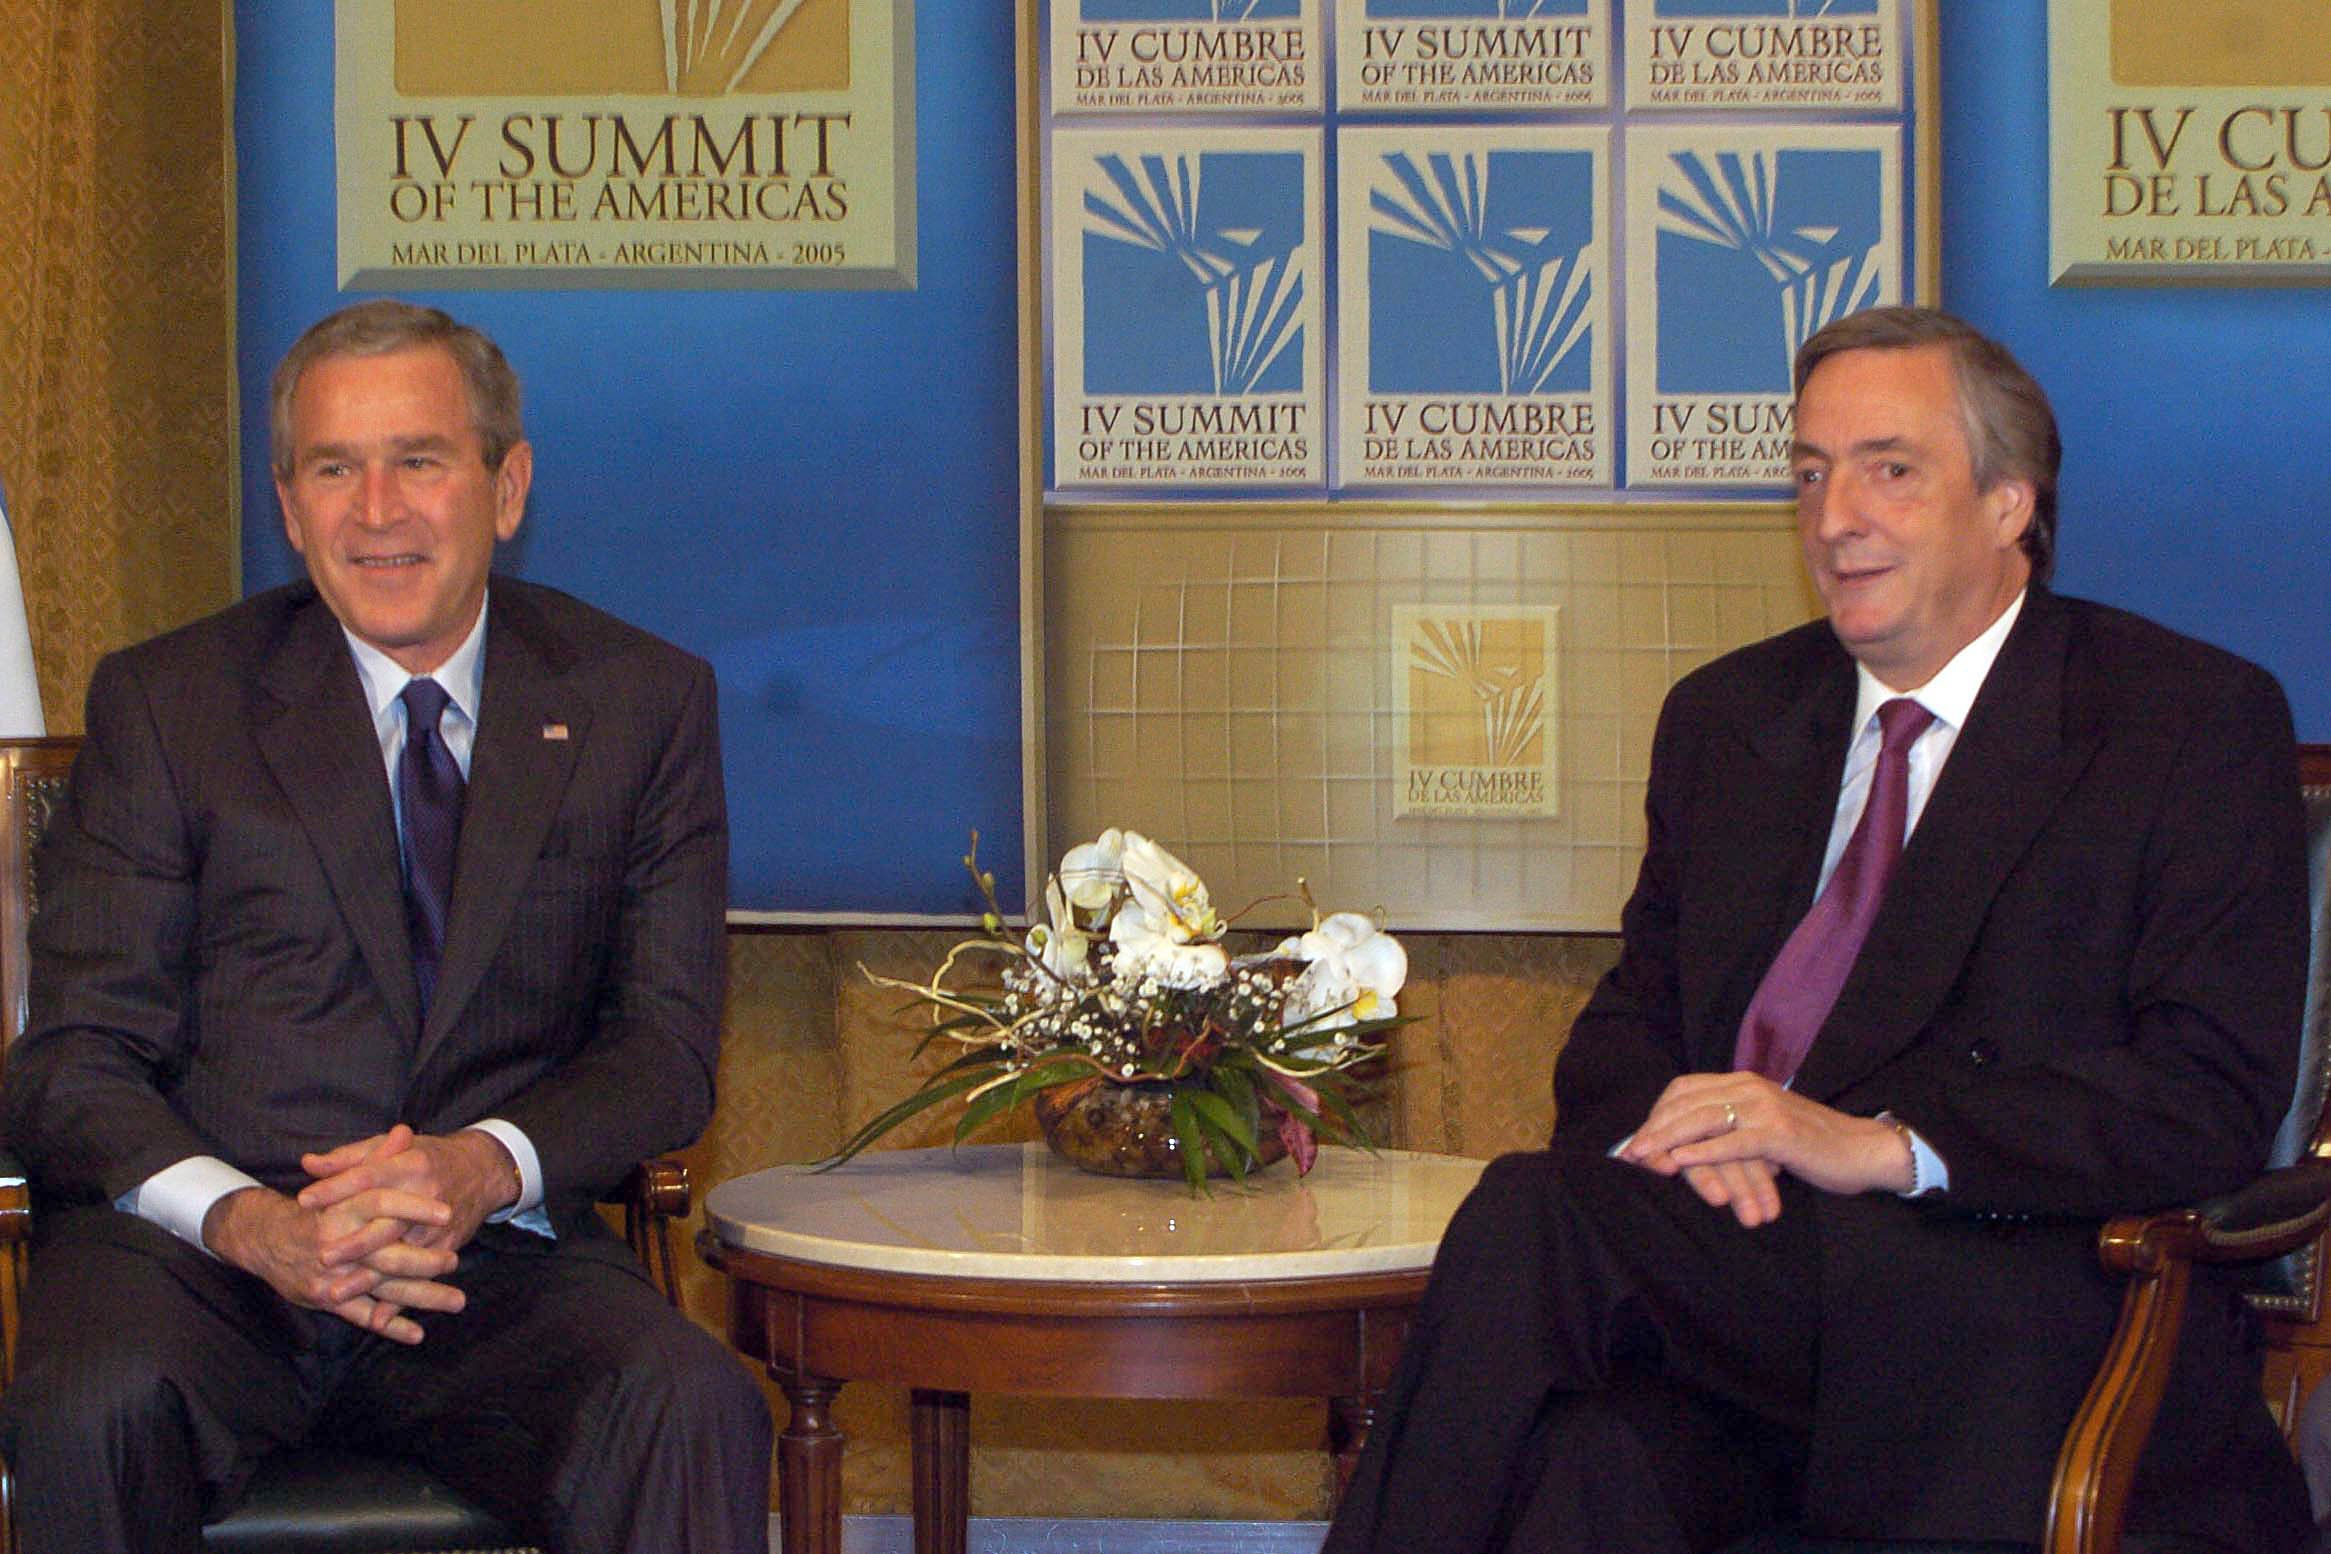 Encuentro de los Presidentes de EE.UU, George W. Bush, y de Argentina, Nestor Kirchner